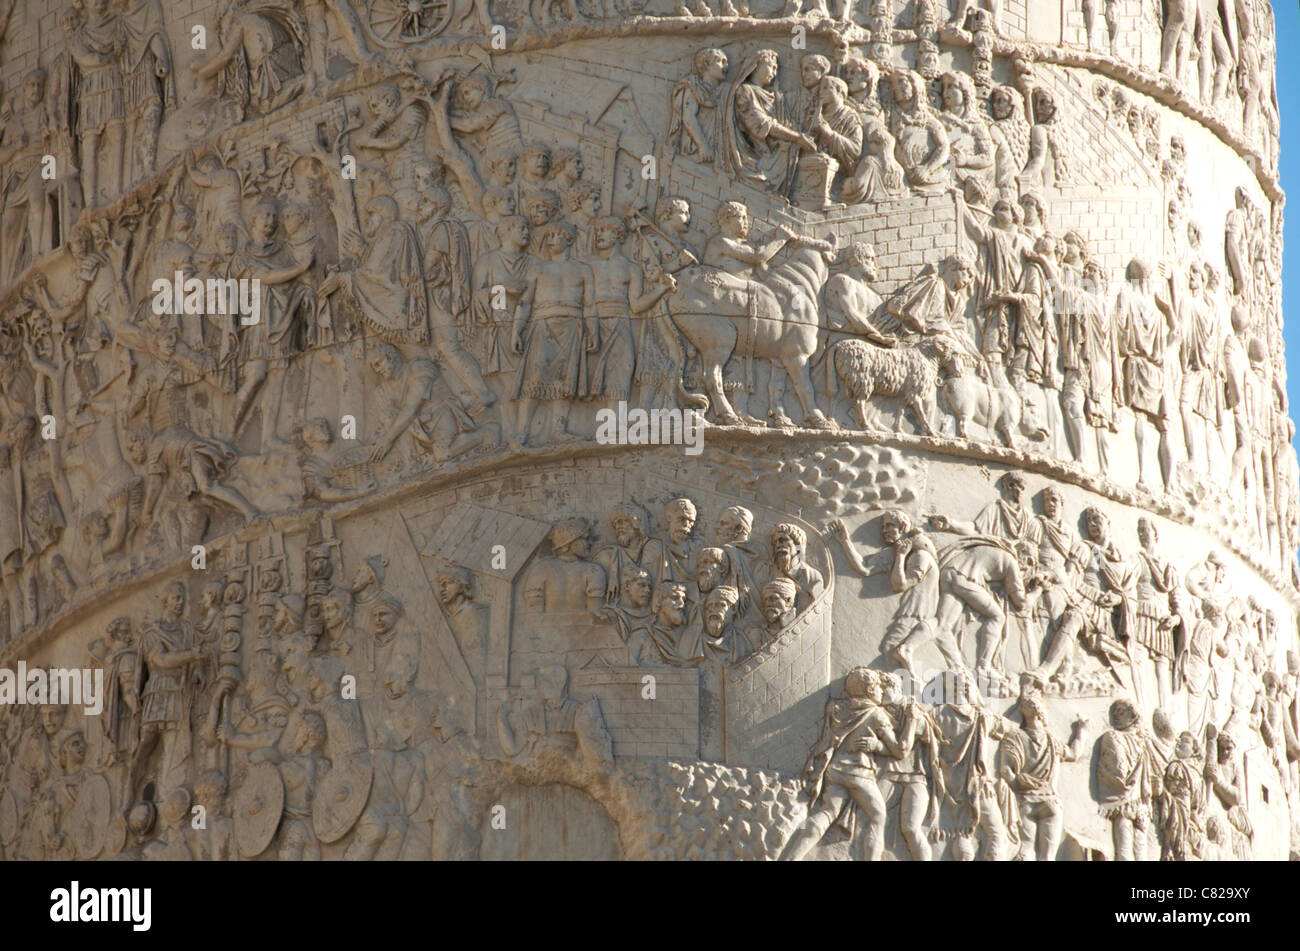 Dettaglio delle incisioni sulla Colonna di Traiano, Roma, Italia Foto Stock